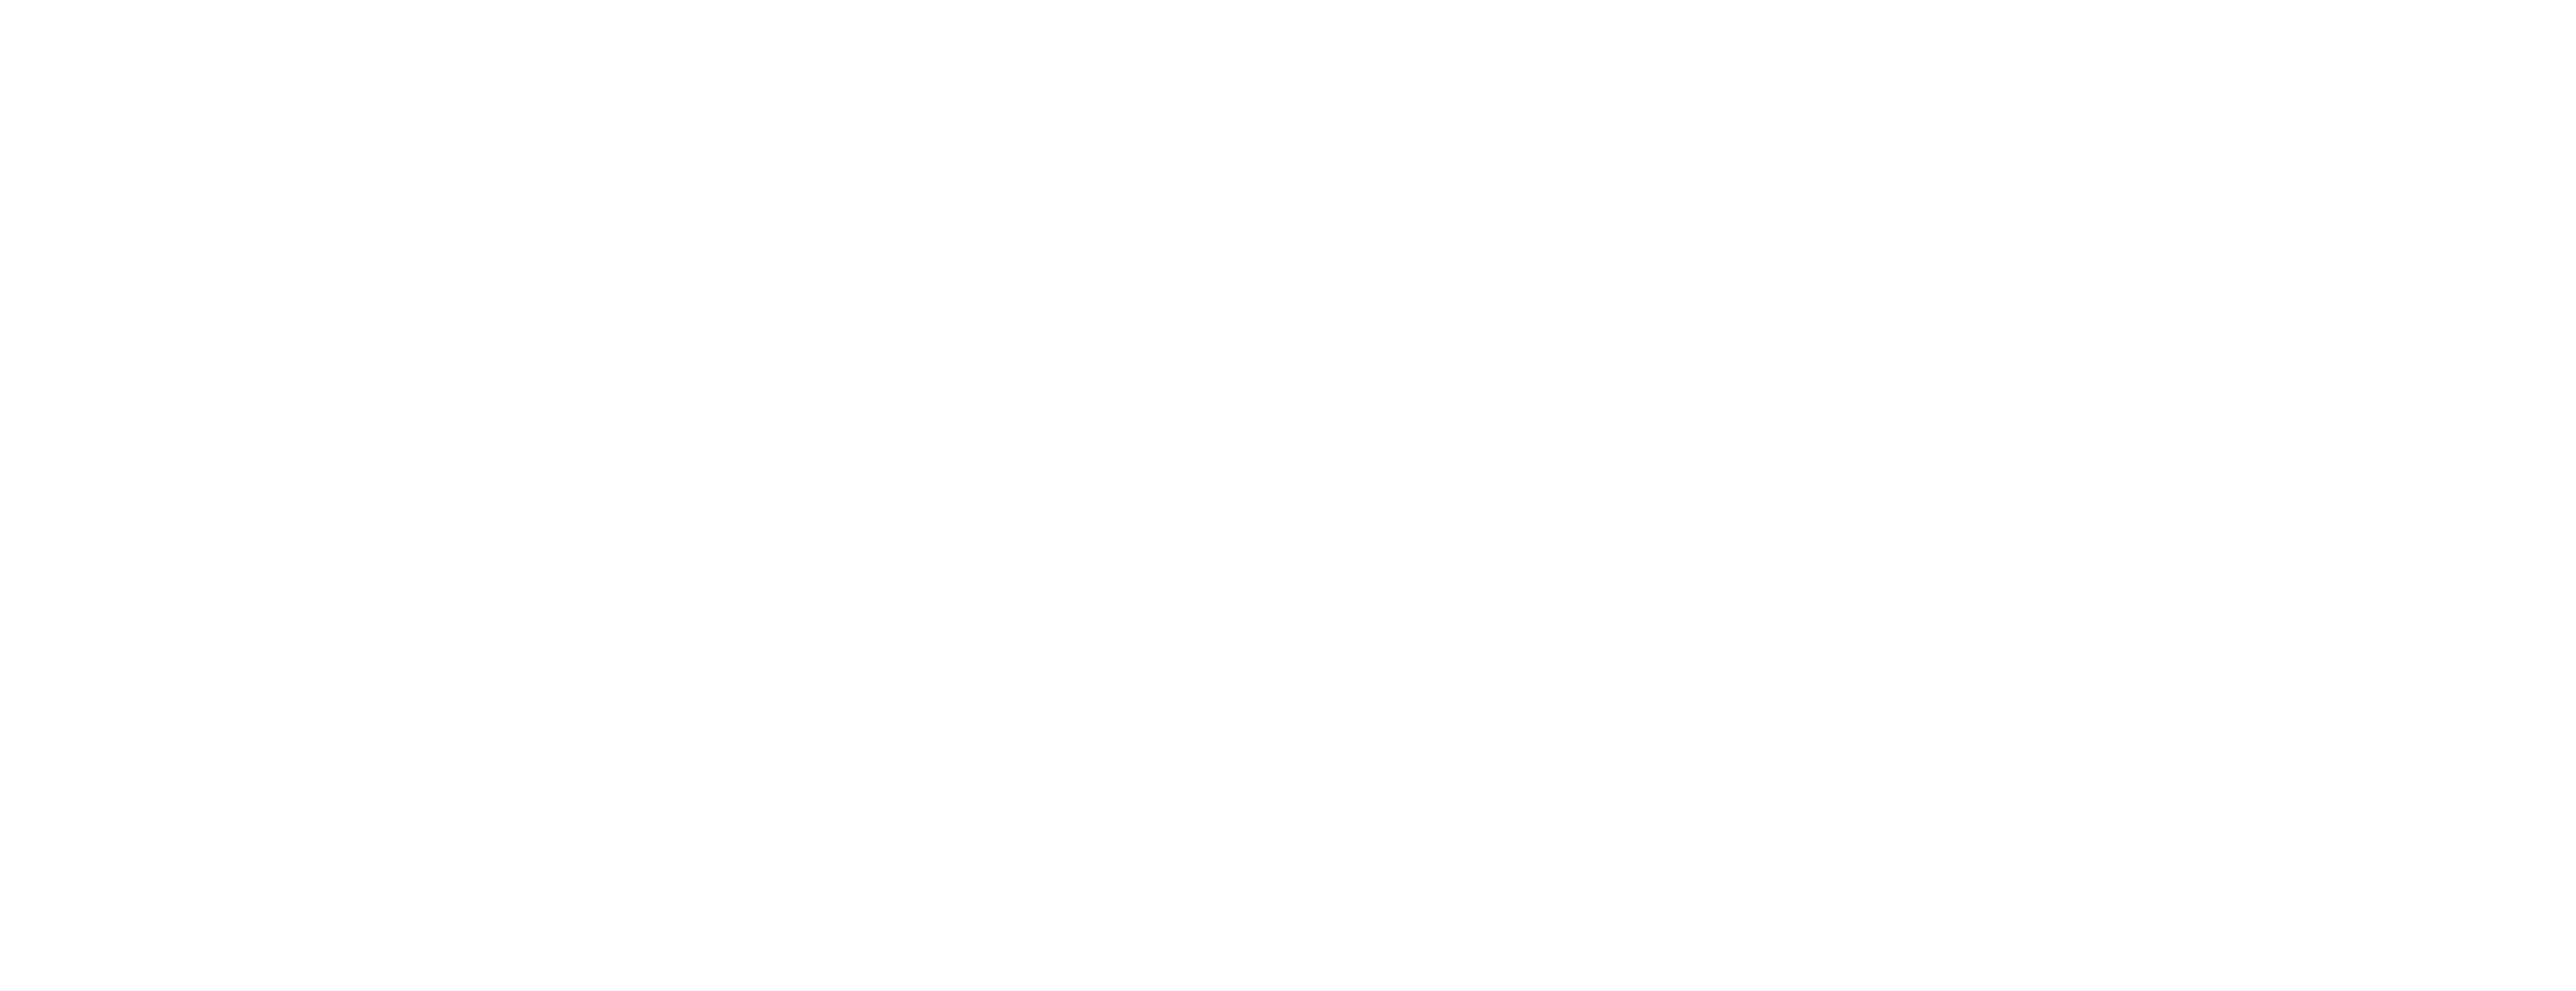 Killinchy Cycling Club